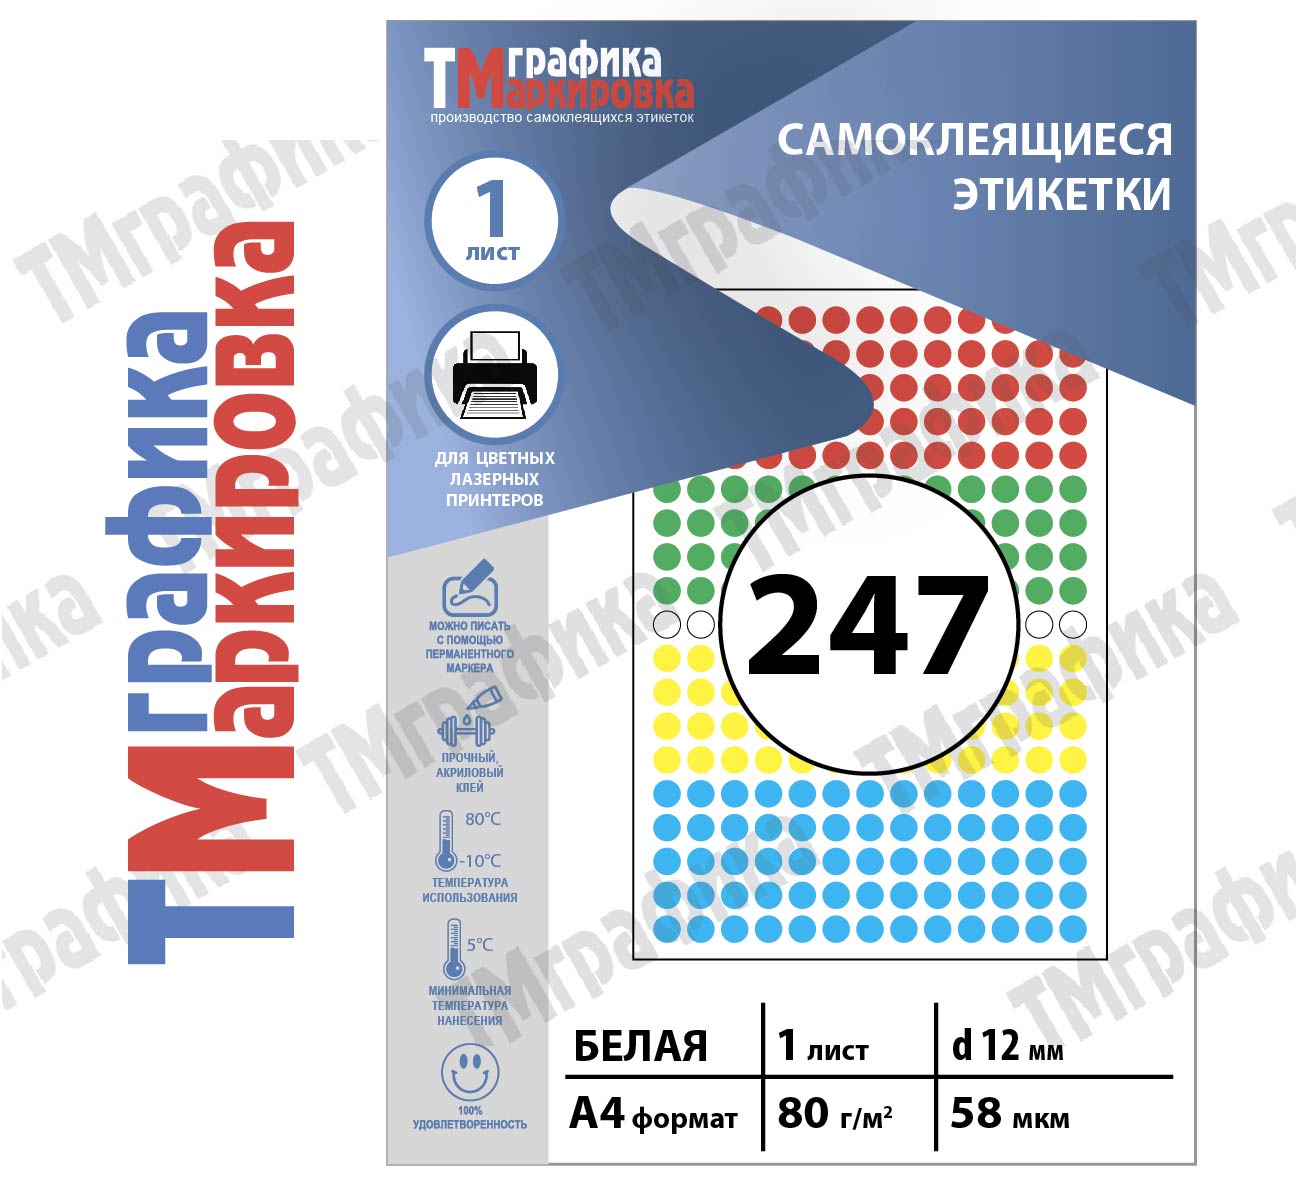 Этикетки d 12х247шт., А4 х 1 лист, для ч.б. и цветной лазерной печати Raflatac самоклеящиеся точки цветные  - 462.32 руб.